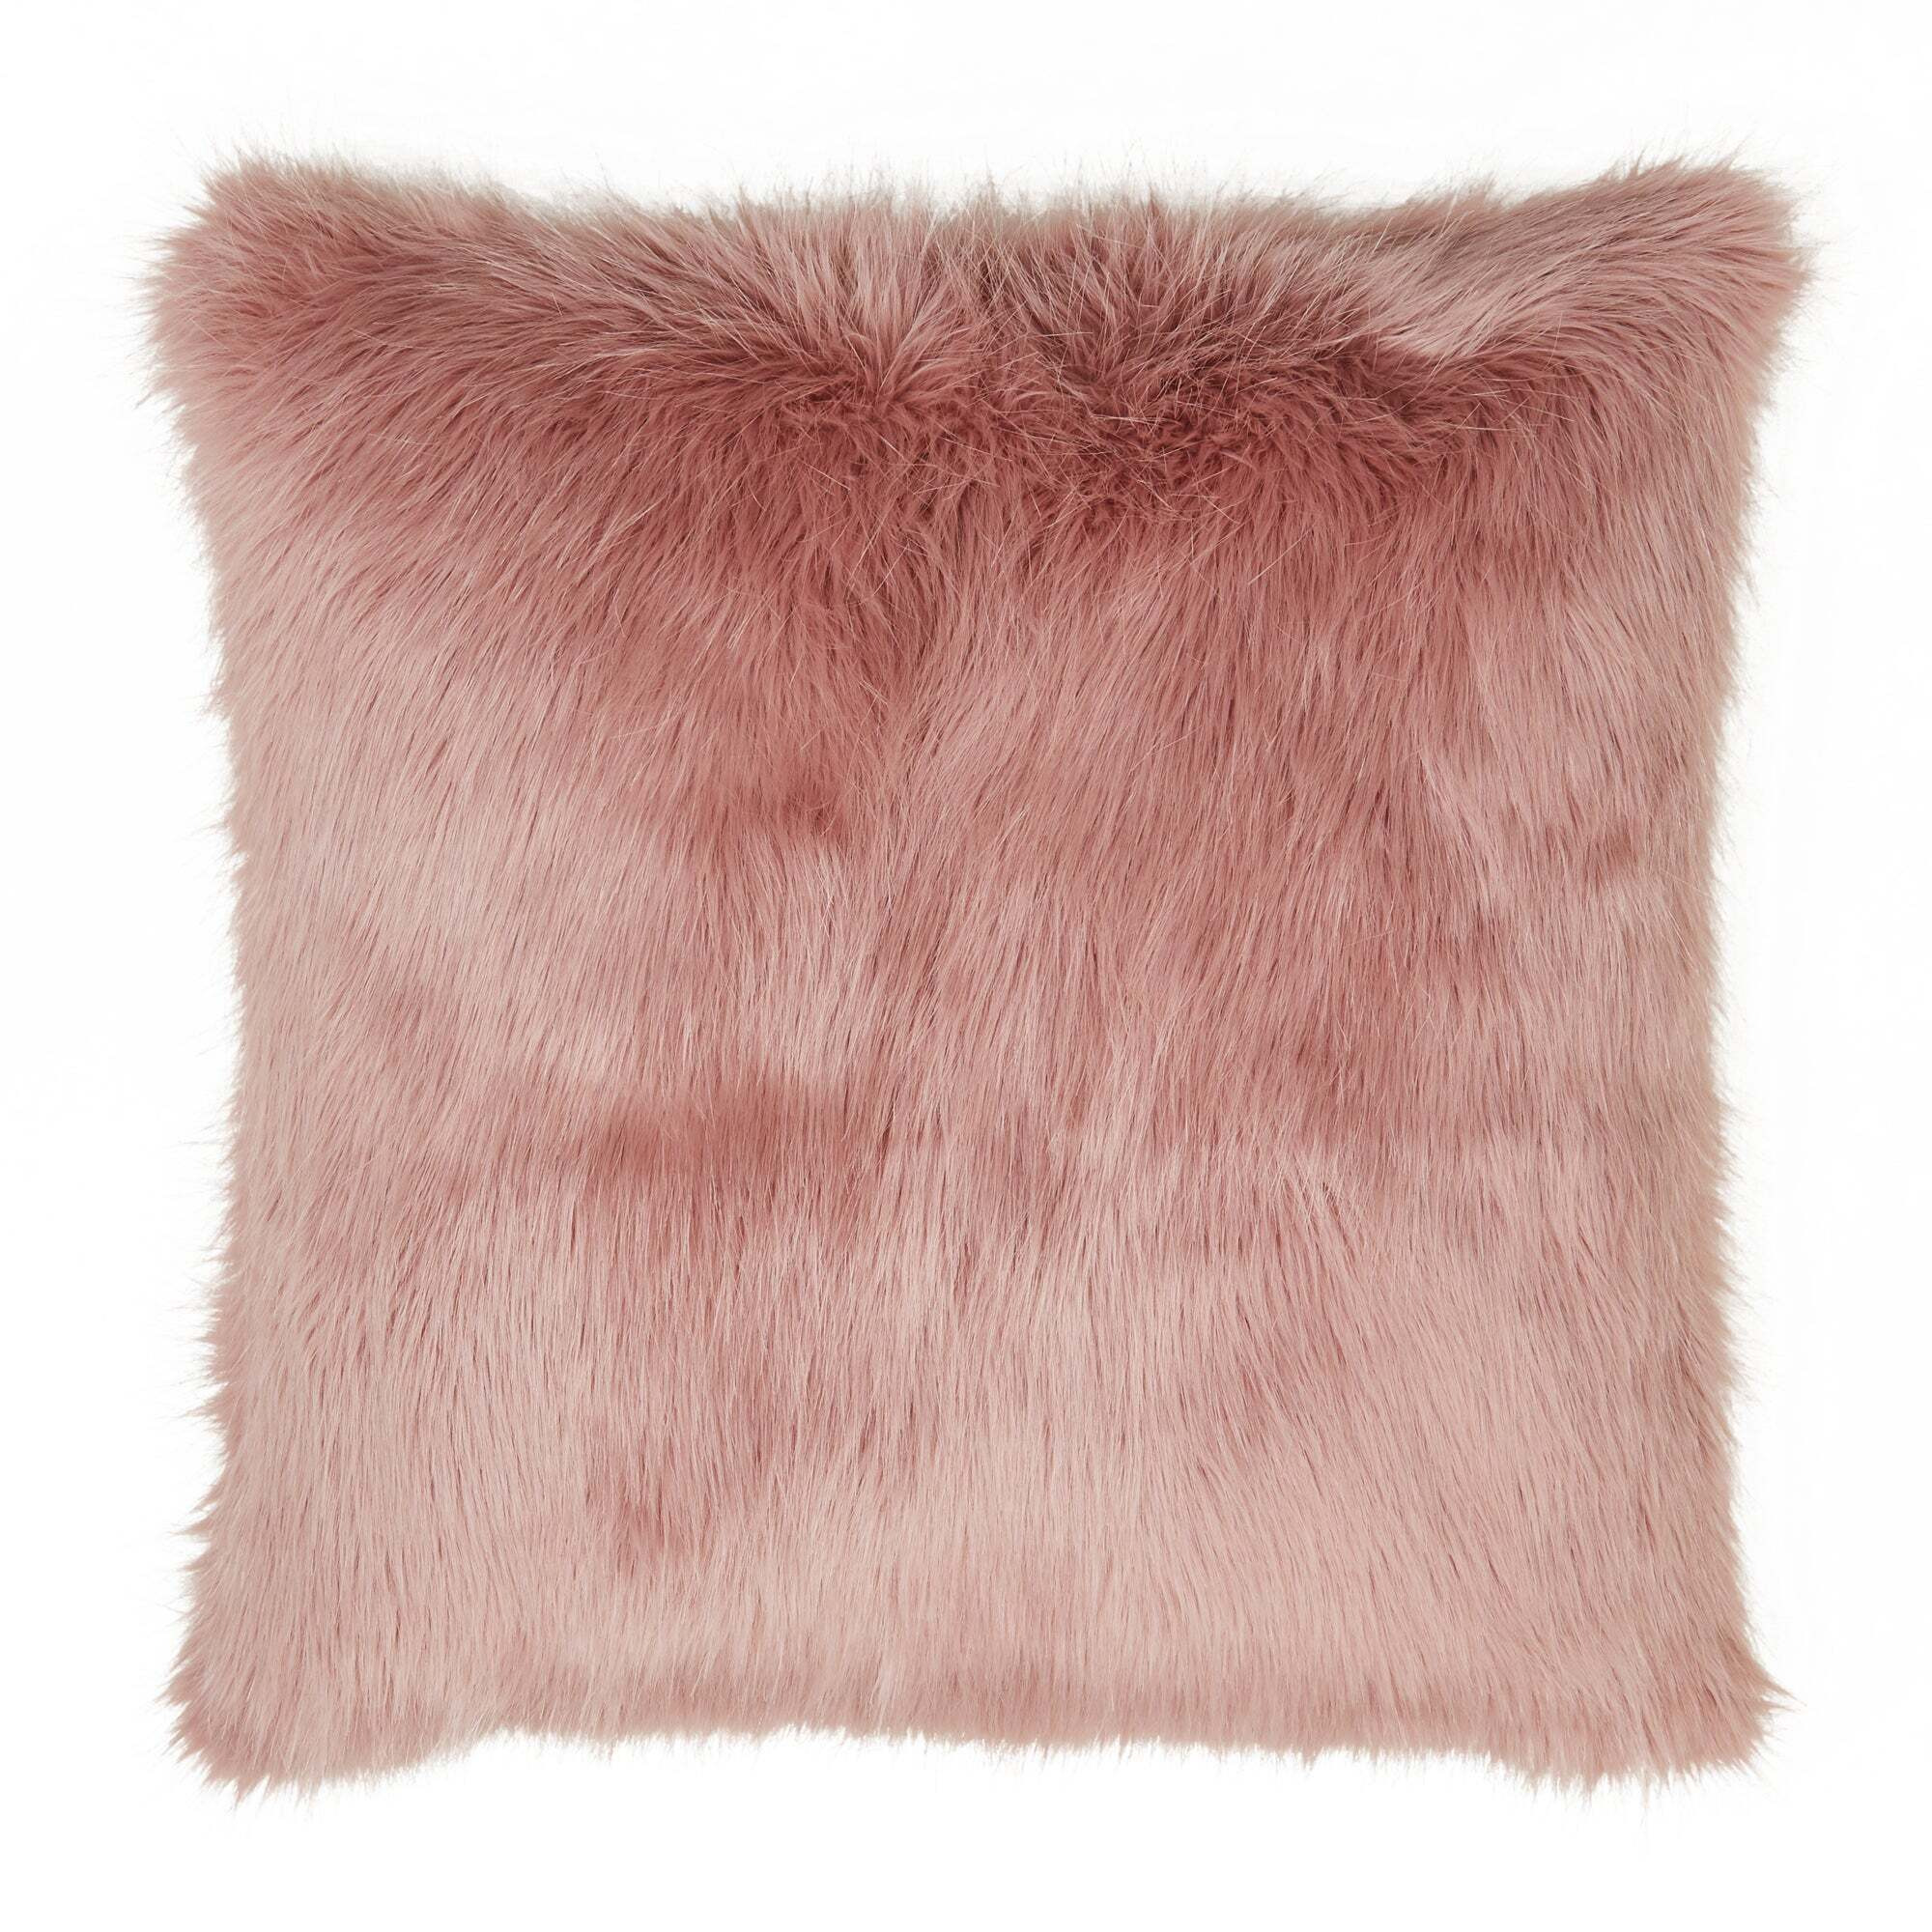 Fluffy Faux Fur Cushion Cover Blush